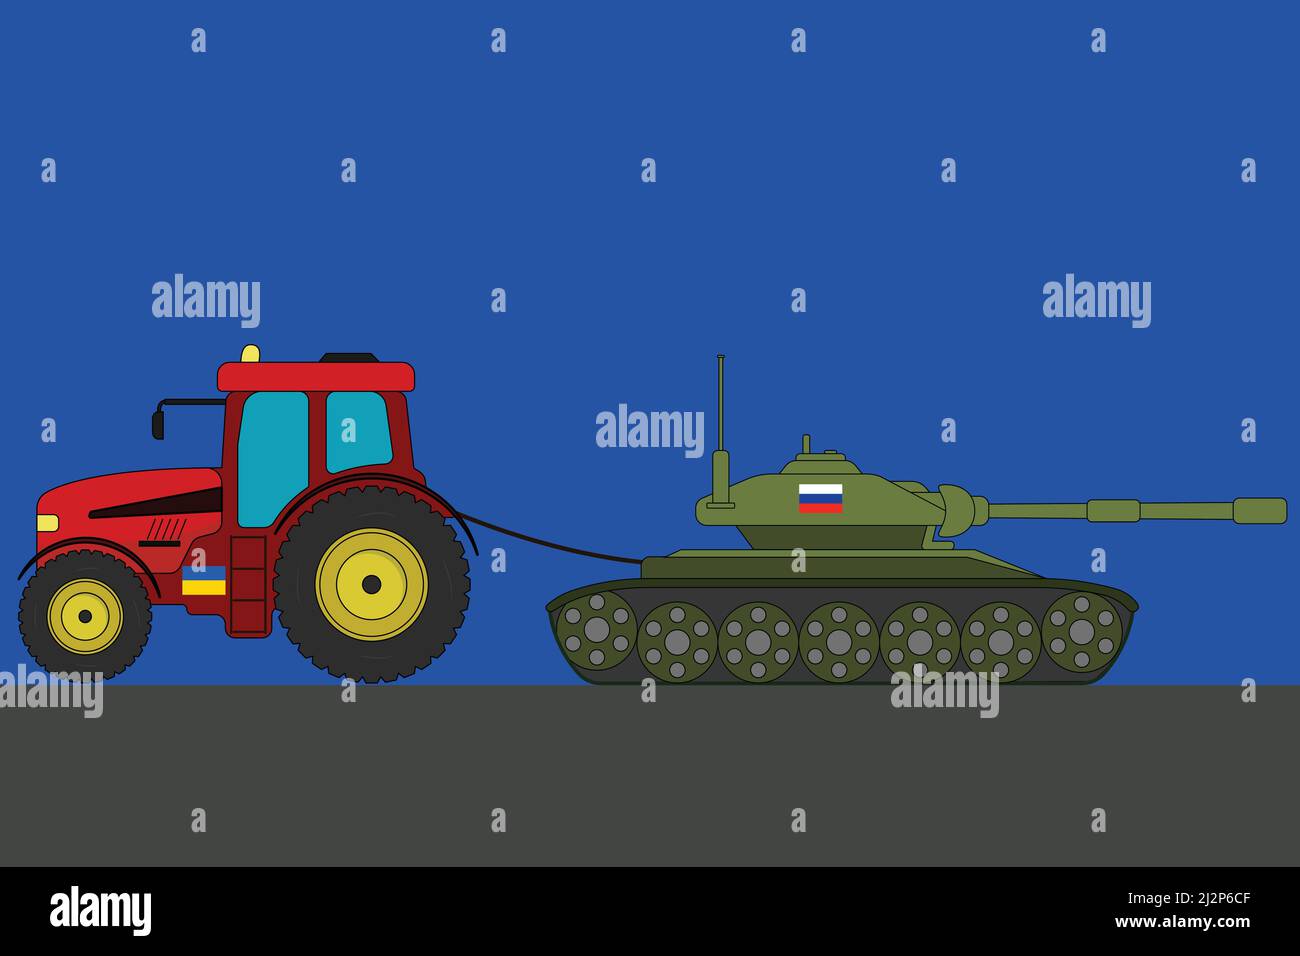 Un tracteur ukrainien truie une illustration représentant un réservoir russe Illustration de Vecteur